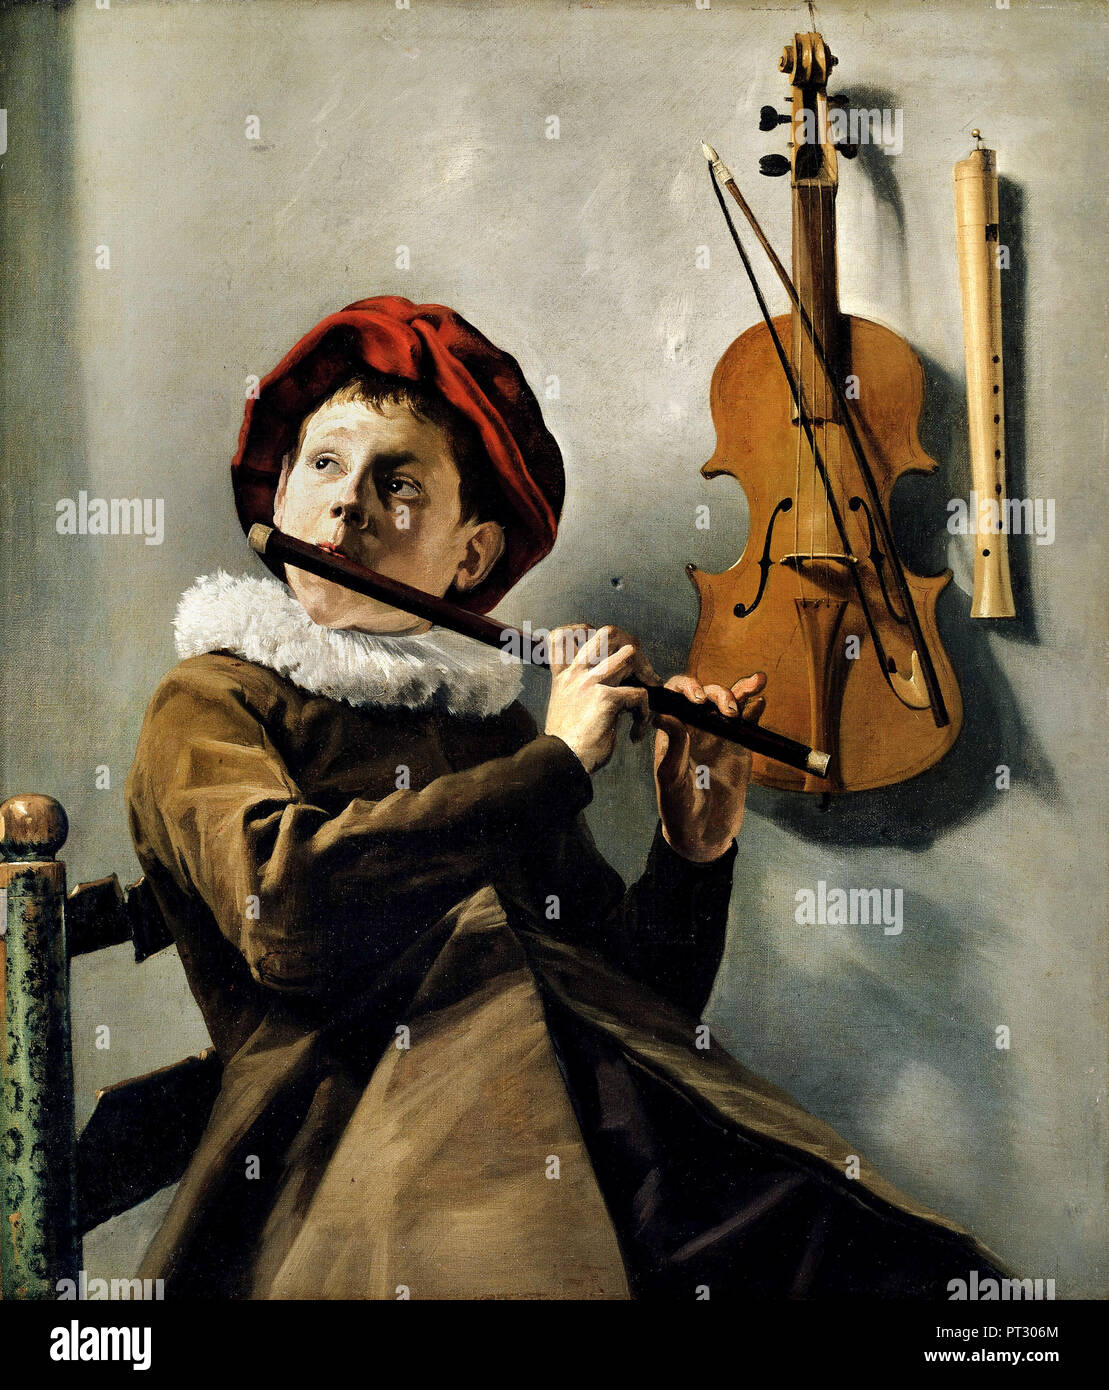 Judith Leyster, jeune joueur de flûte / Garçon jouant de la flûte, vers 1630 huile sur toile, Nationalmuseum, Stockholm, Suède. Banque D'Images